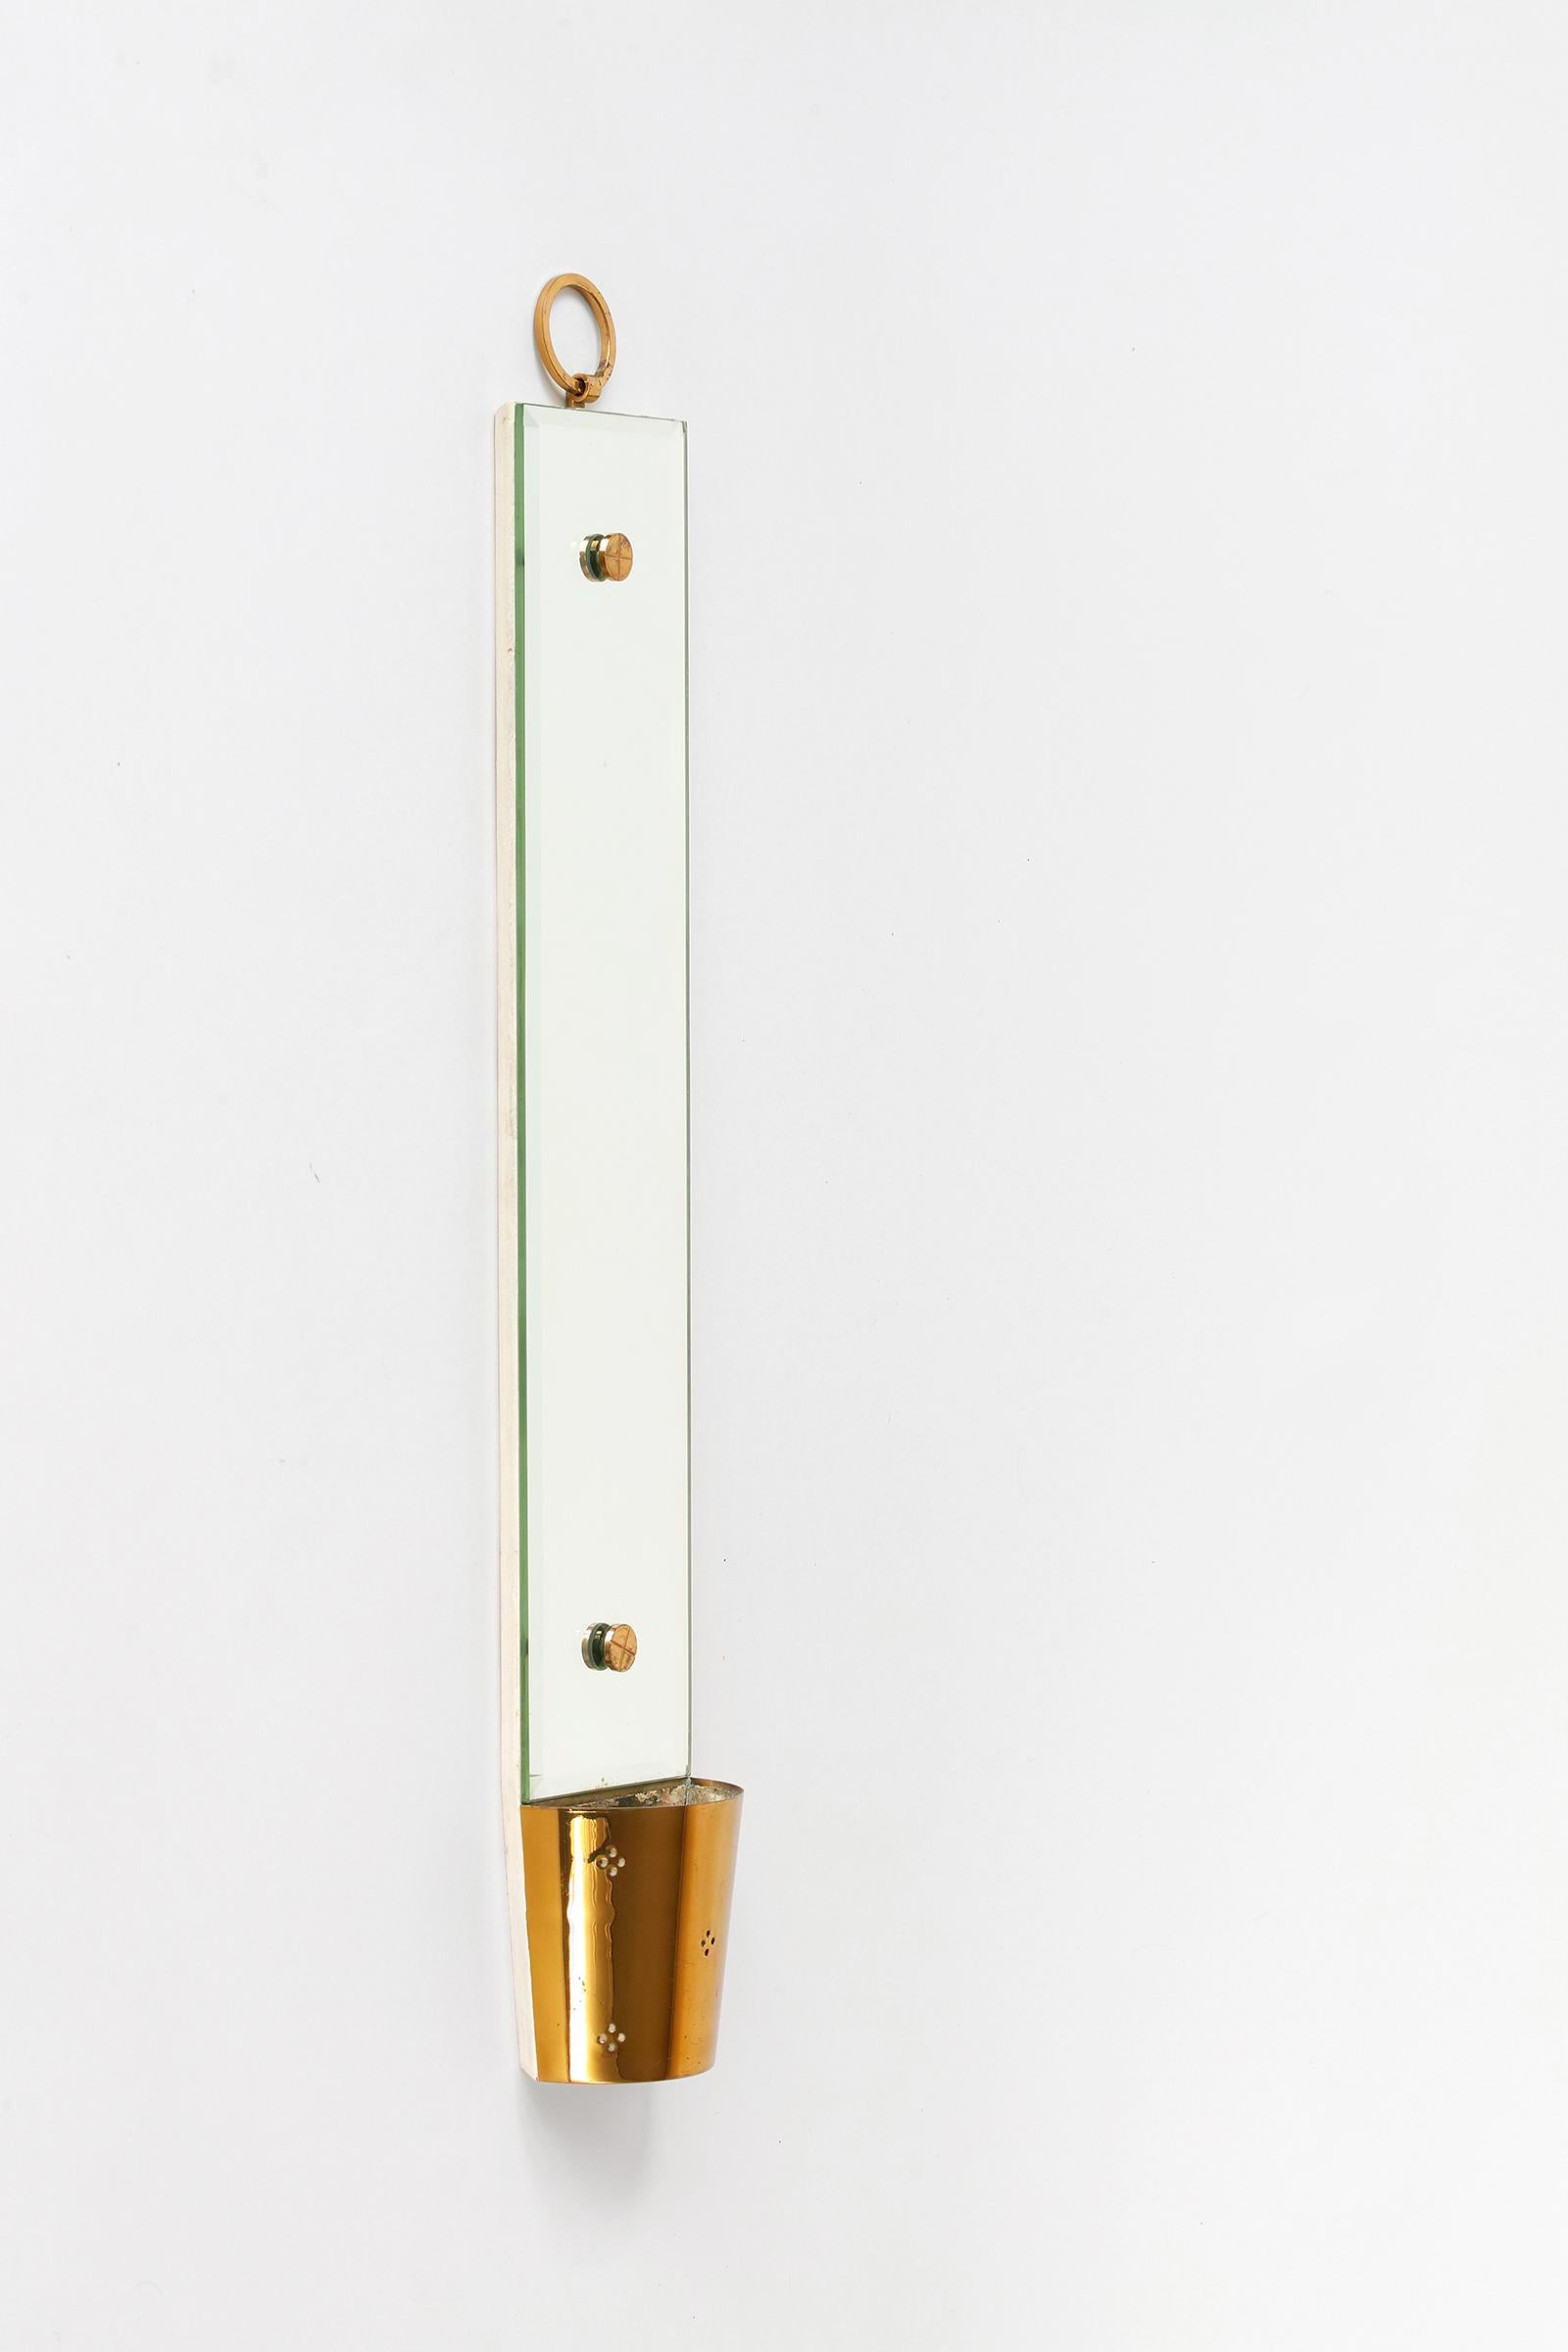 Wir bieten Ihnen diesen modernen Spiegel mit Pflanzgefäß von Tommi Parzinger aus der Mitte des Jahrhunderts an. Das verspiegelte Glas hat abgeschrägte Kanten, ist auf weiß lackiertem Holz montiert und wird von Parzingers unverwechselbaren